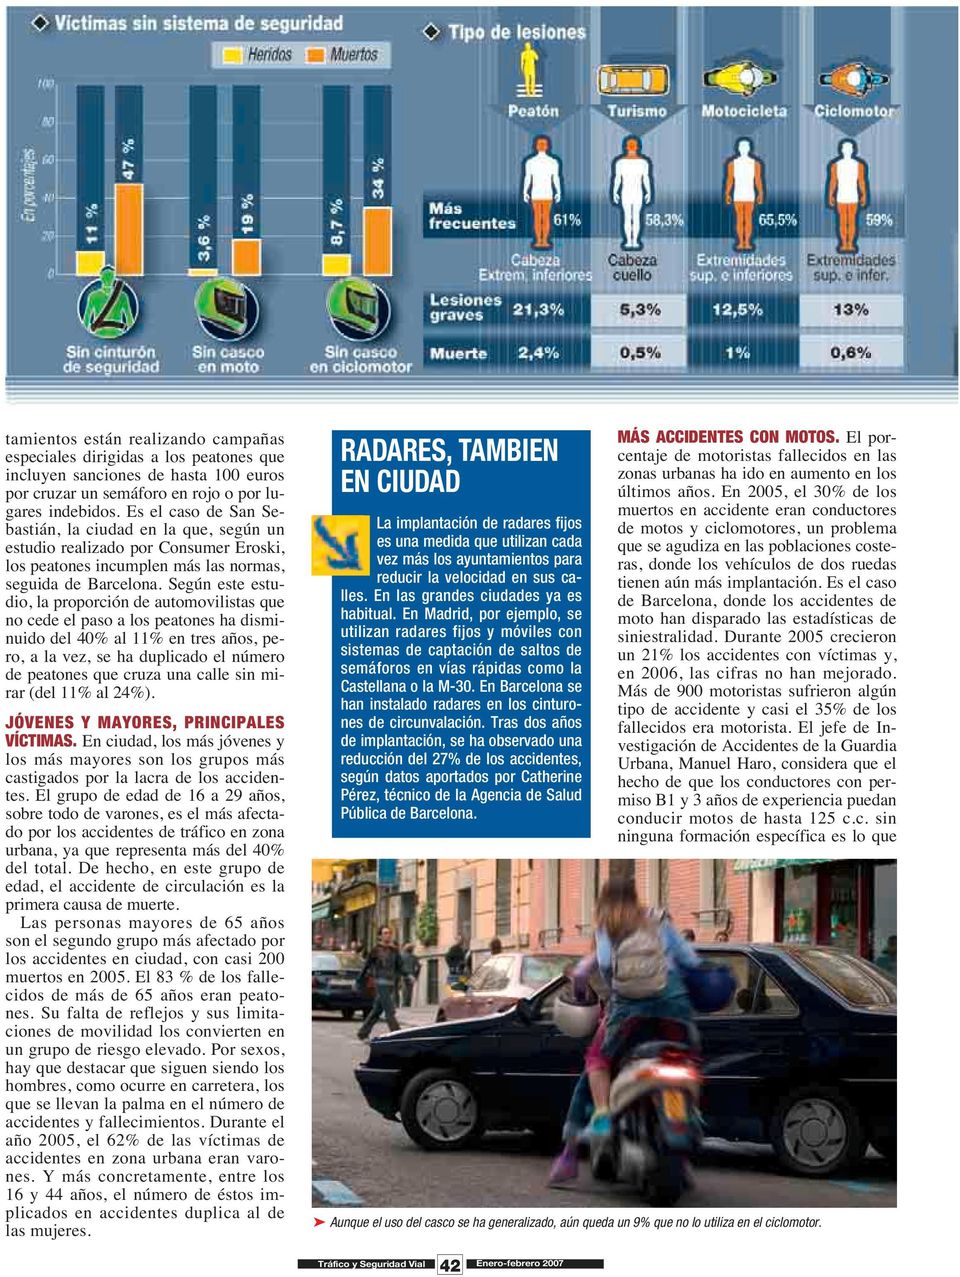 Según este estudio, la proporción de automovilistas que no cede el paso a los peatones ha disminuido del 40% al 11% en tres años, pero, a la vez, se ha duplicado el número de peatones que cruza una